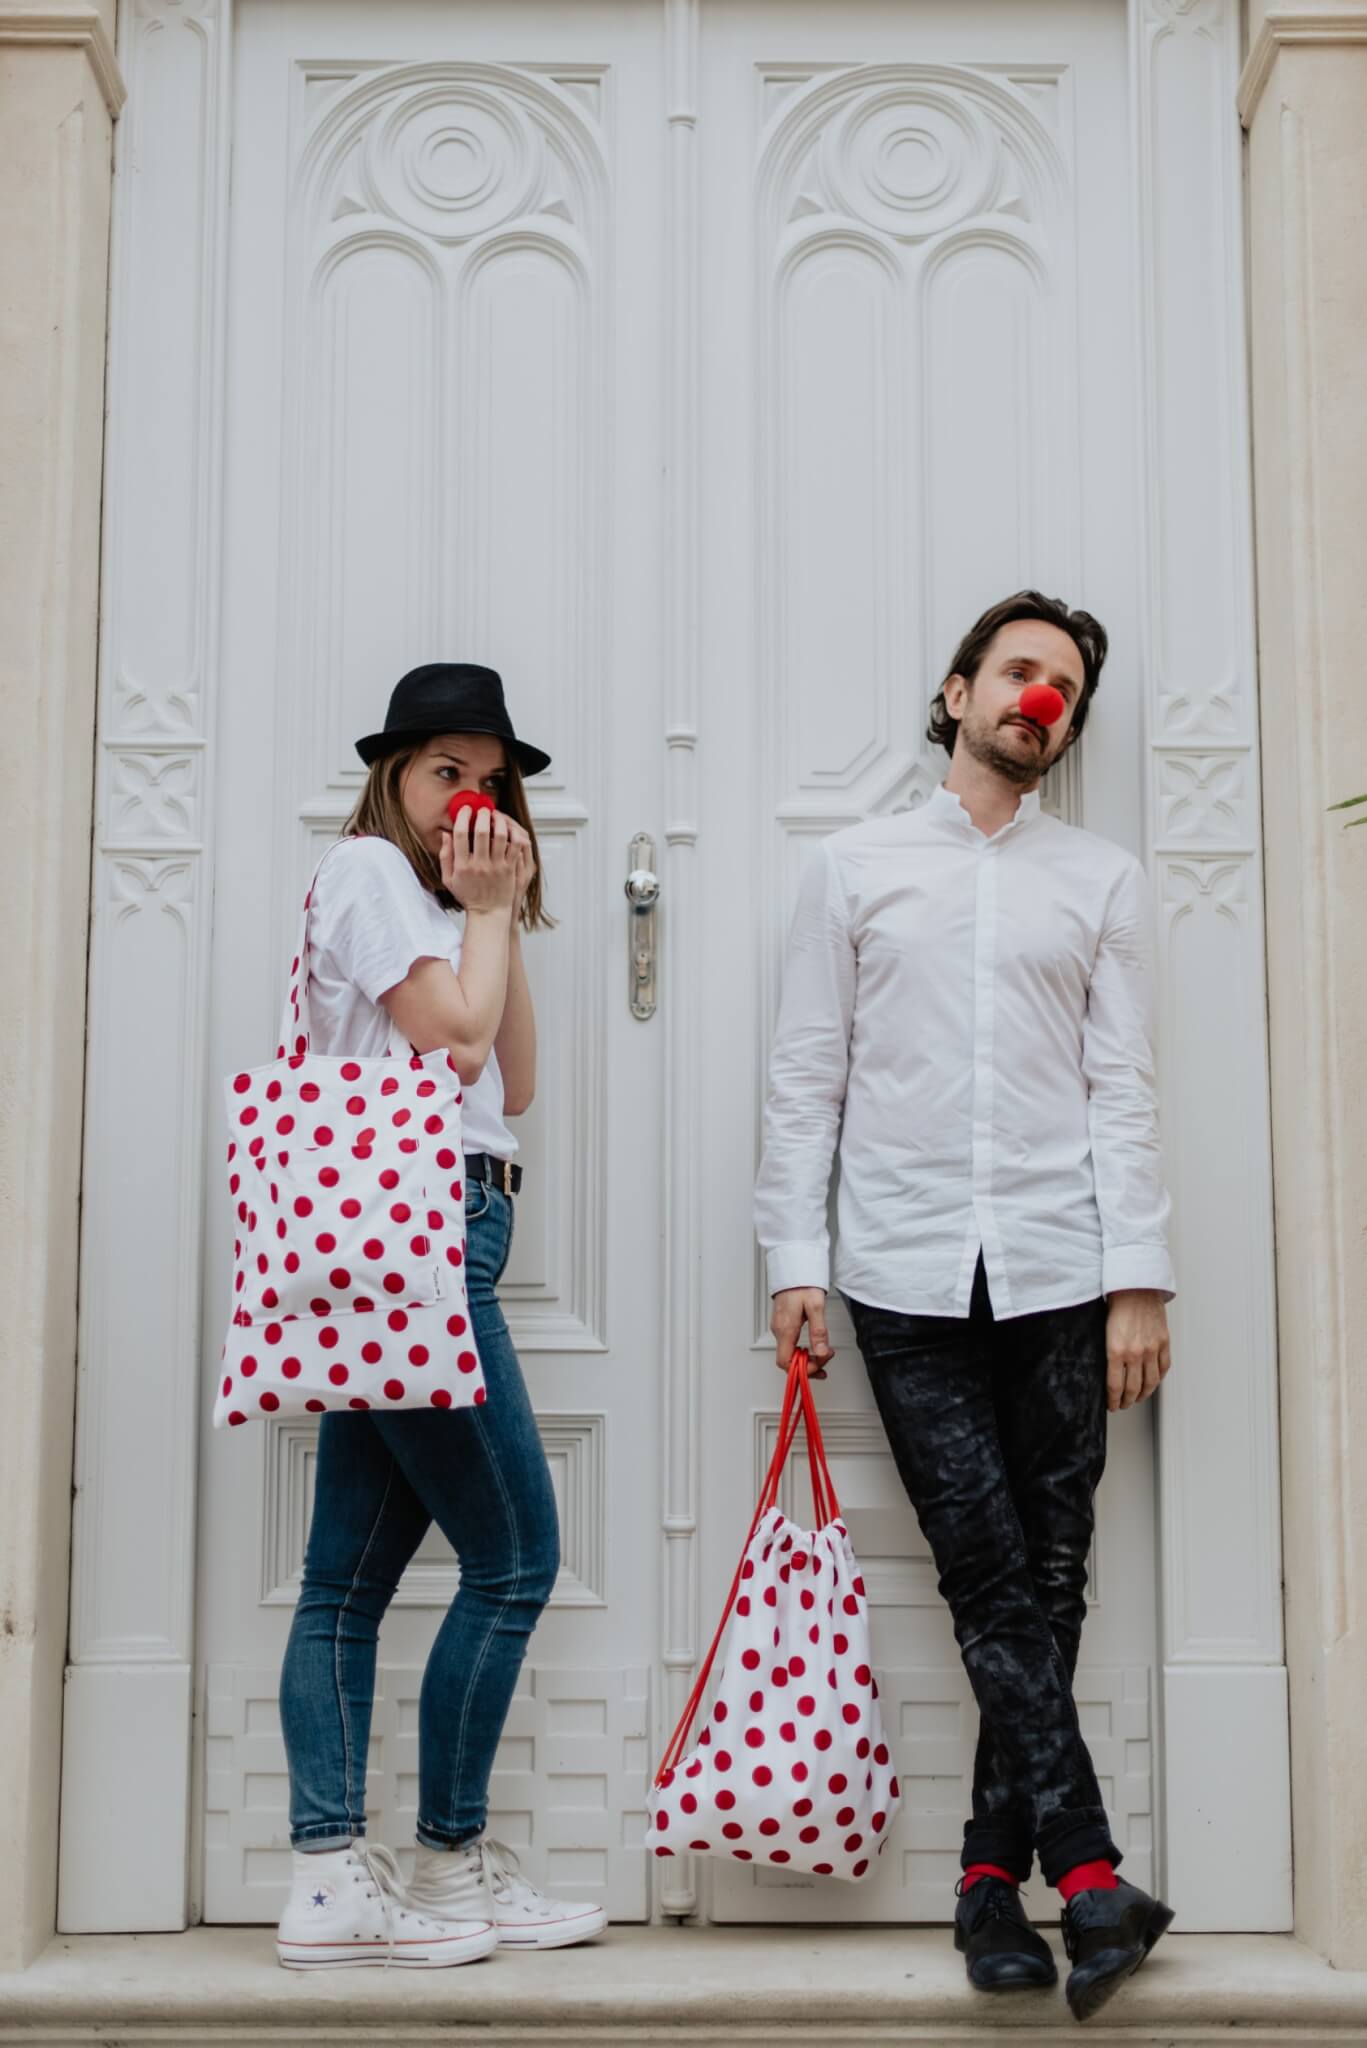 Dostrim daruje organizacii cerveny nos vytazok z predaja dostrimiek limitovanej edicie darujem. Na fotke je Juraj Hrcka.